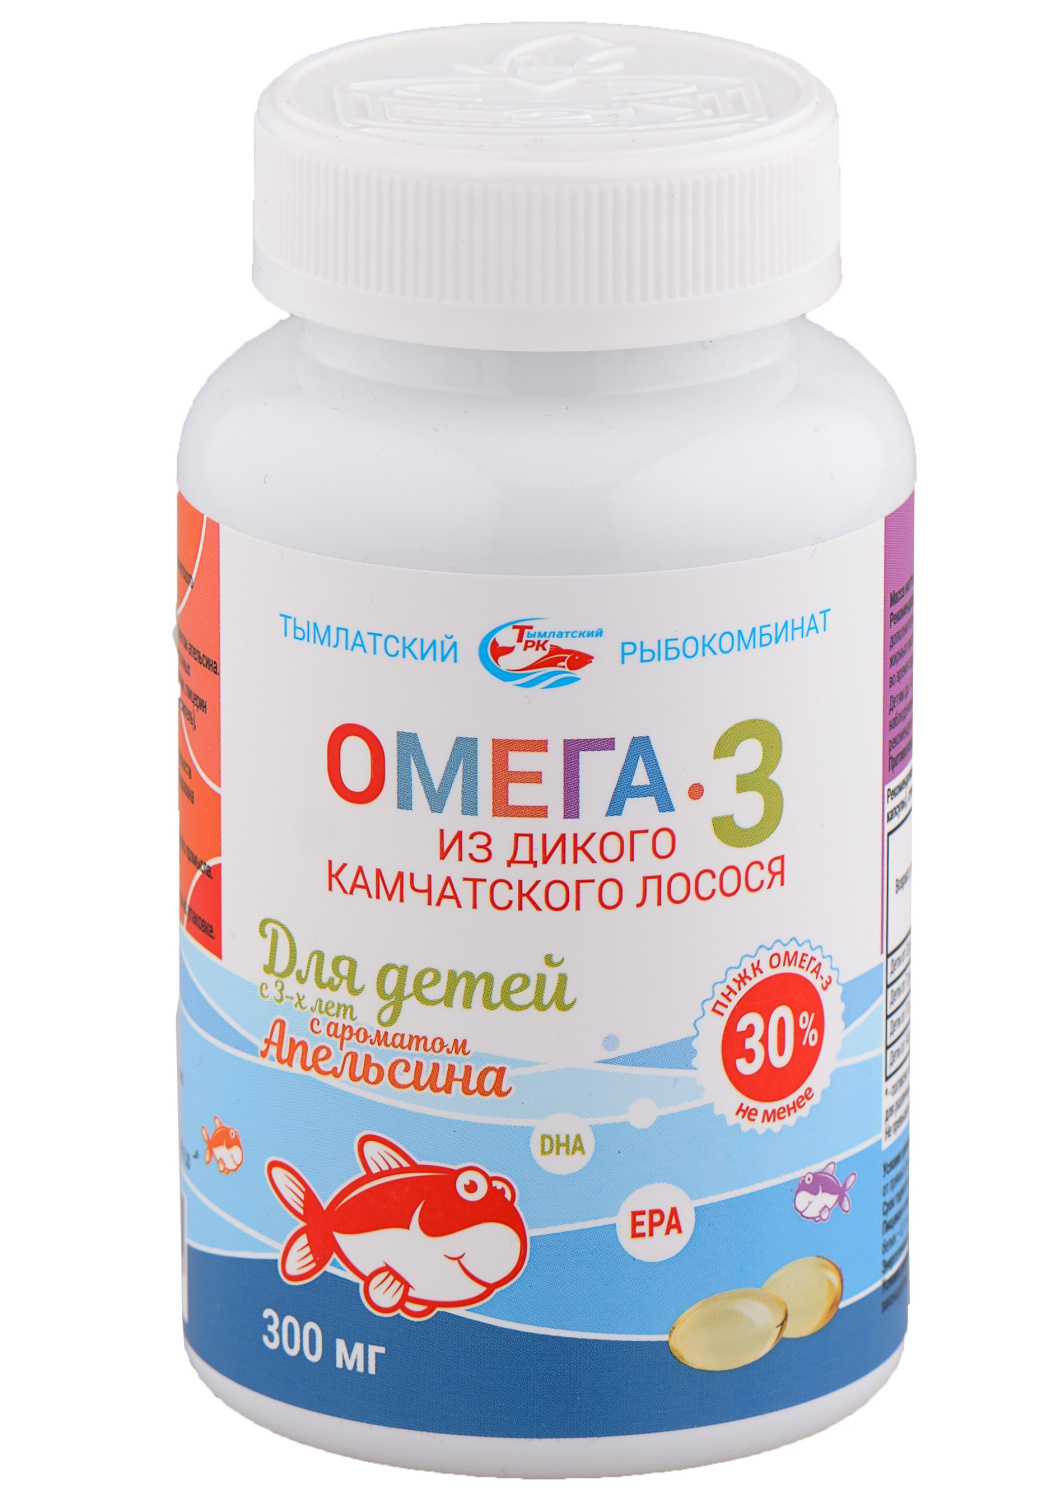 Омега-3 из дикого камчатского лосося для детей с 3-х лет (апельсин) Тымлатский рыбокомбинат (Salmoniсa), 250 капс. по 300 мг.